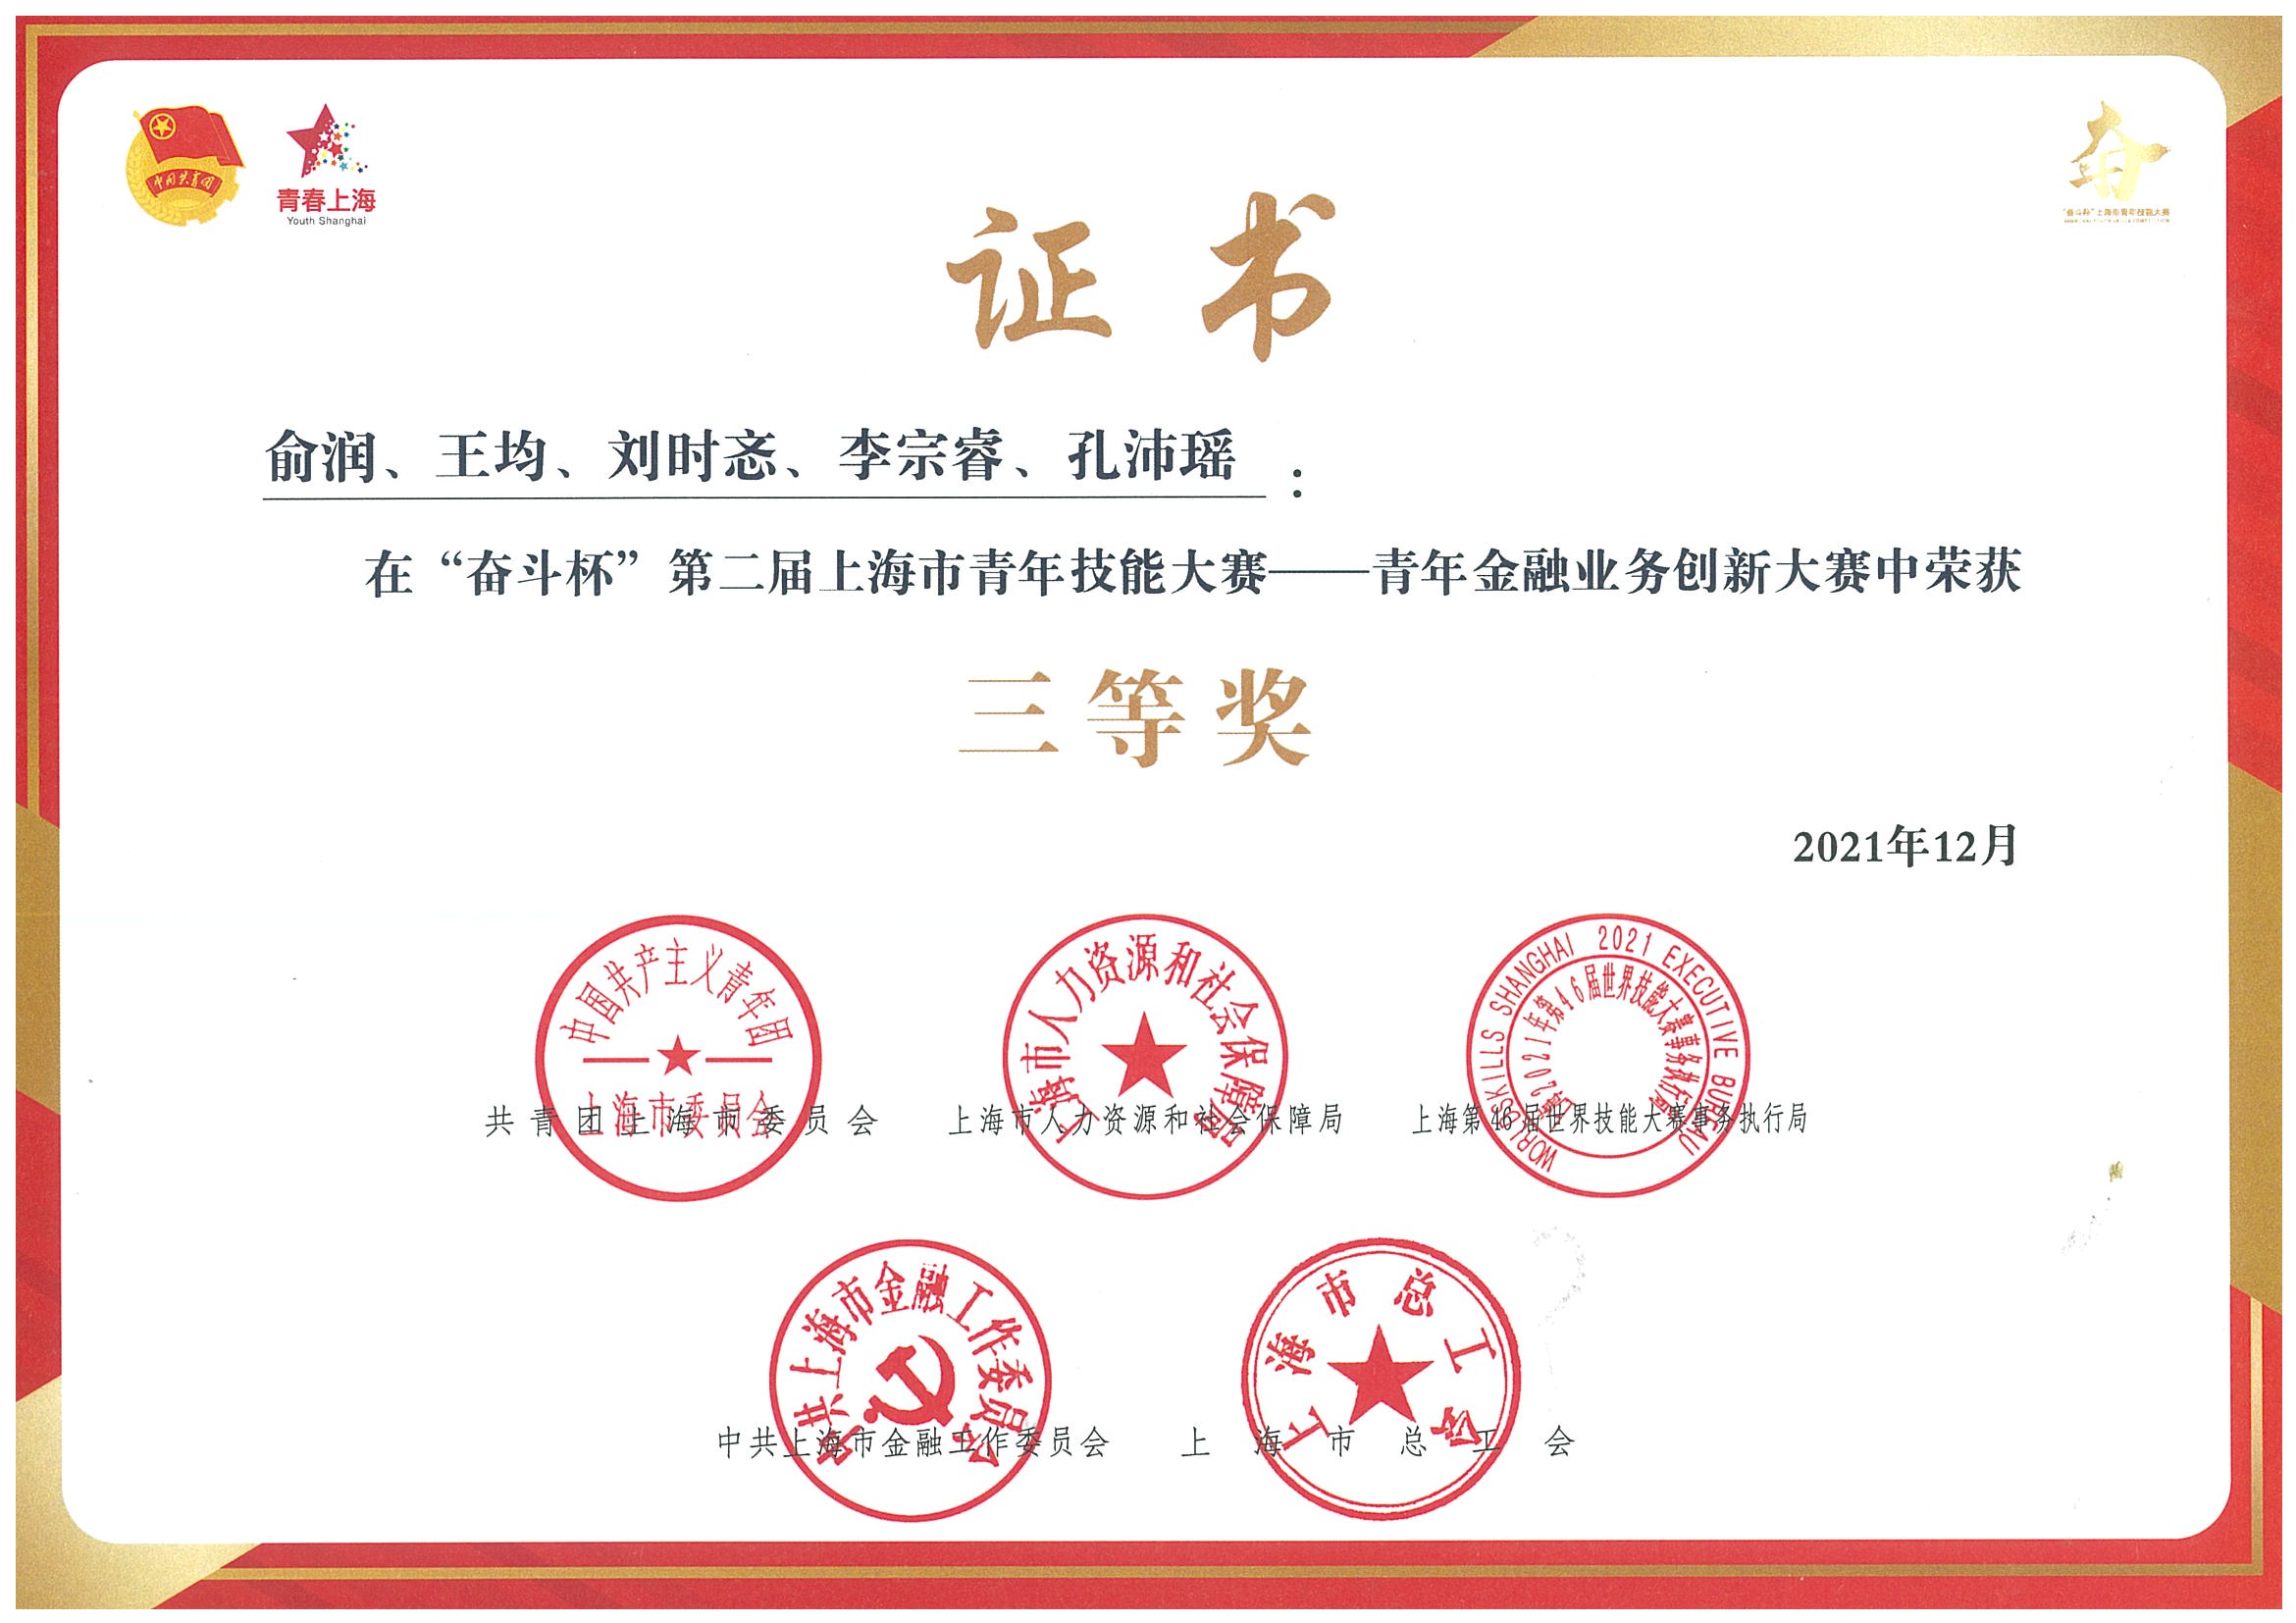 上海信托员公荣获青年金融业务创新大赛中三等奖